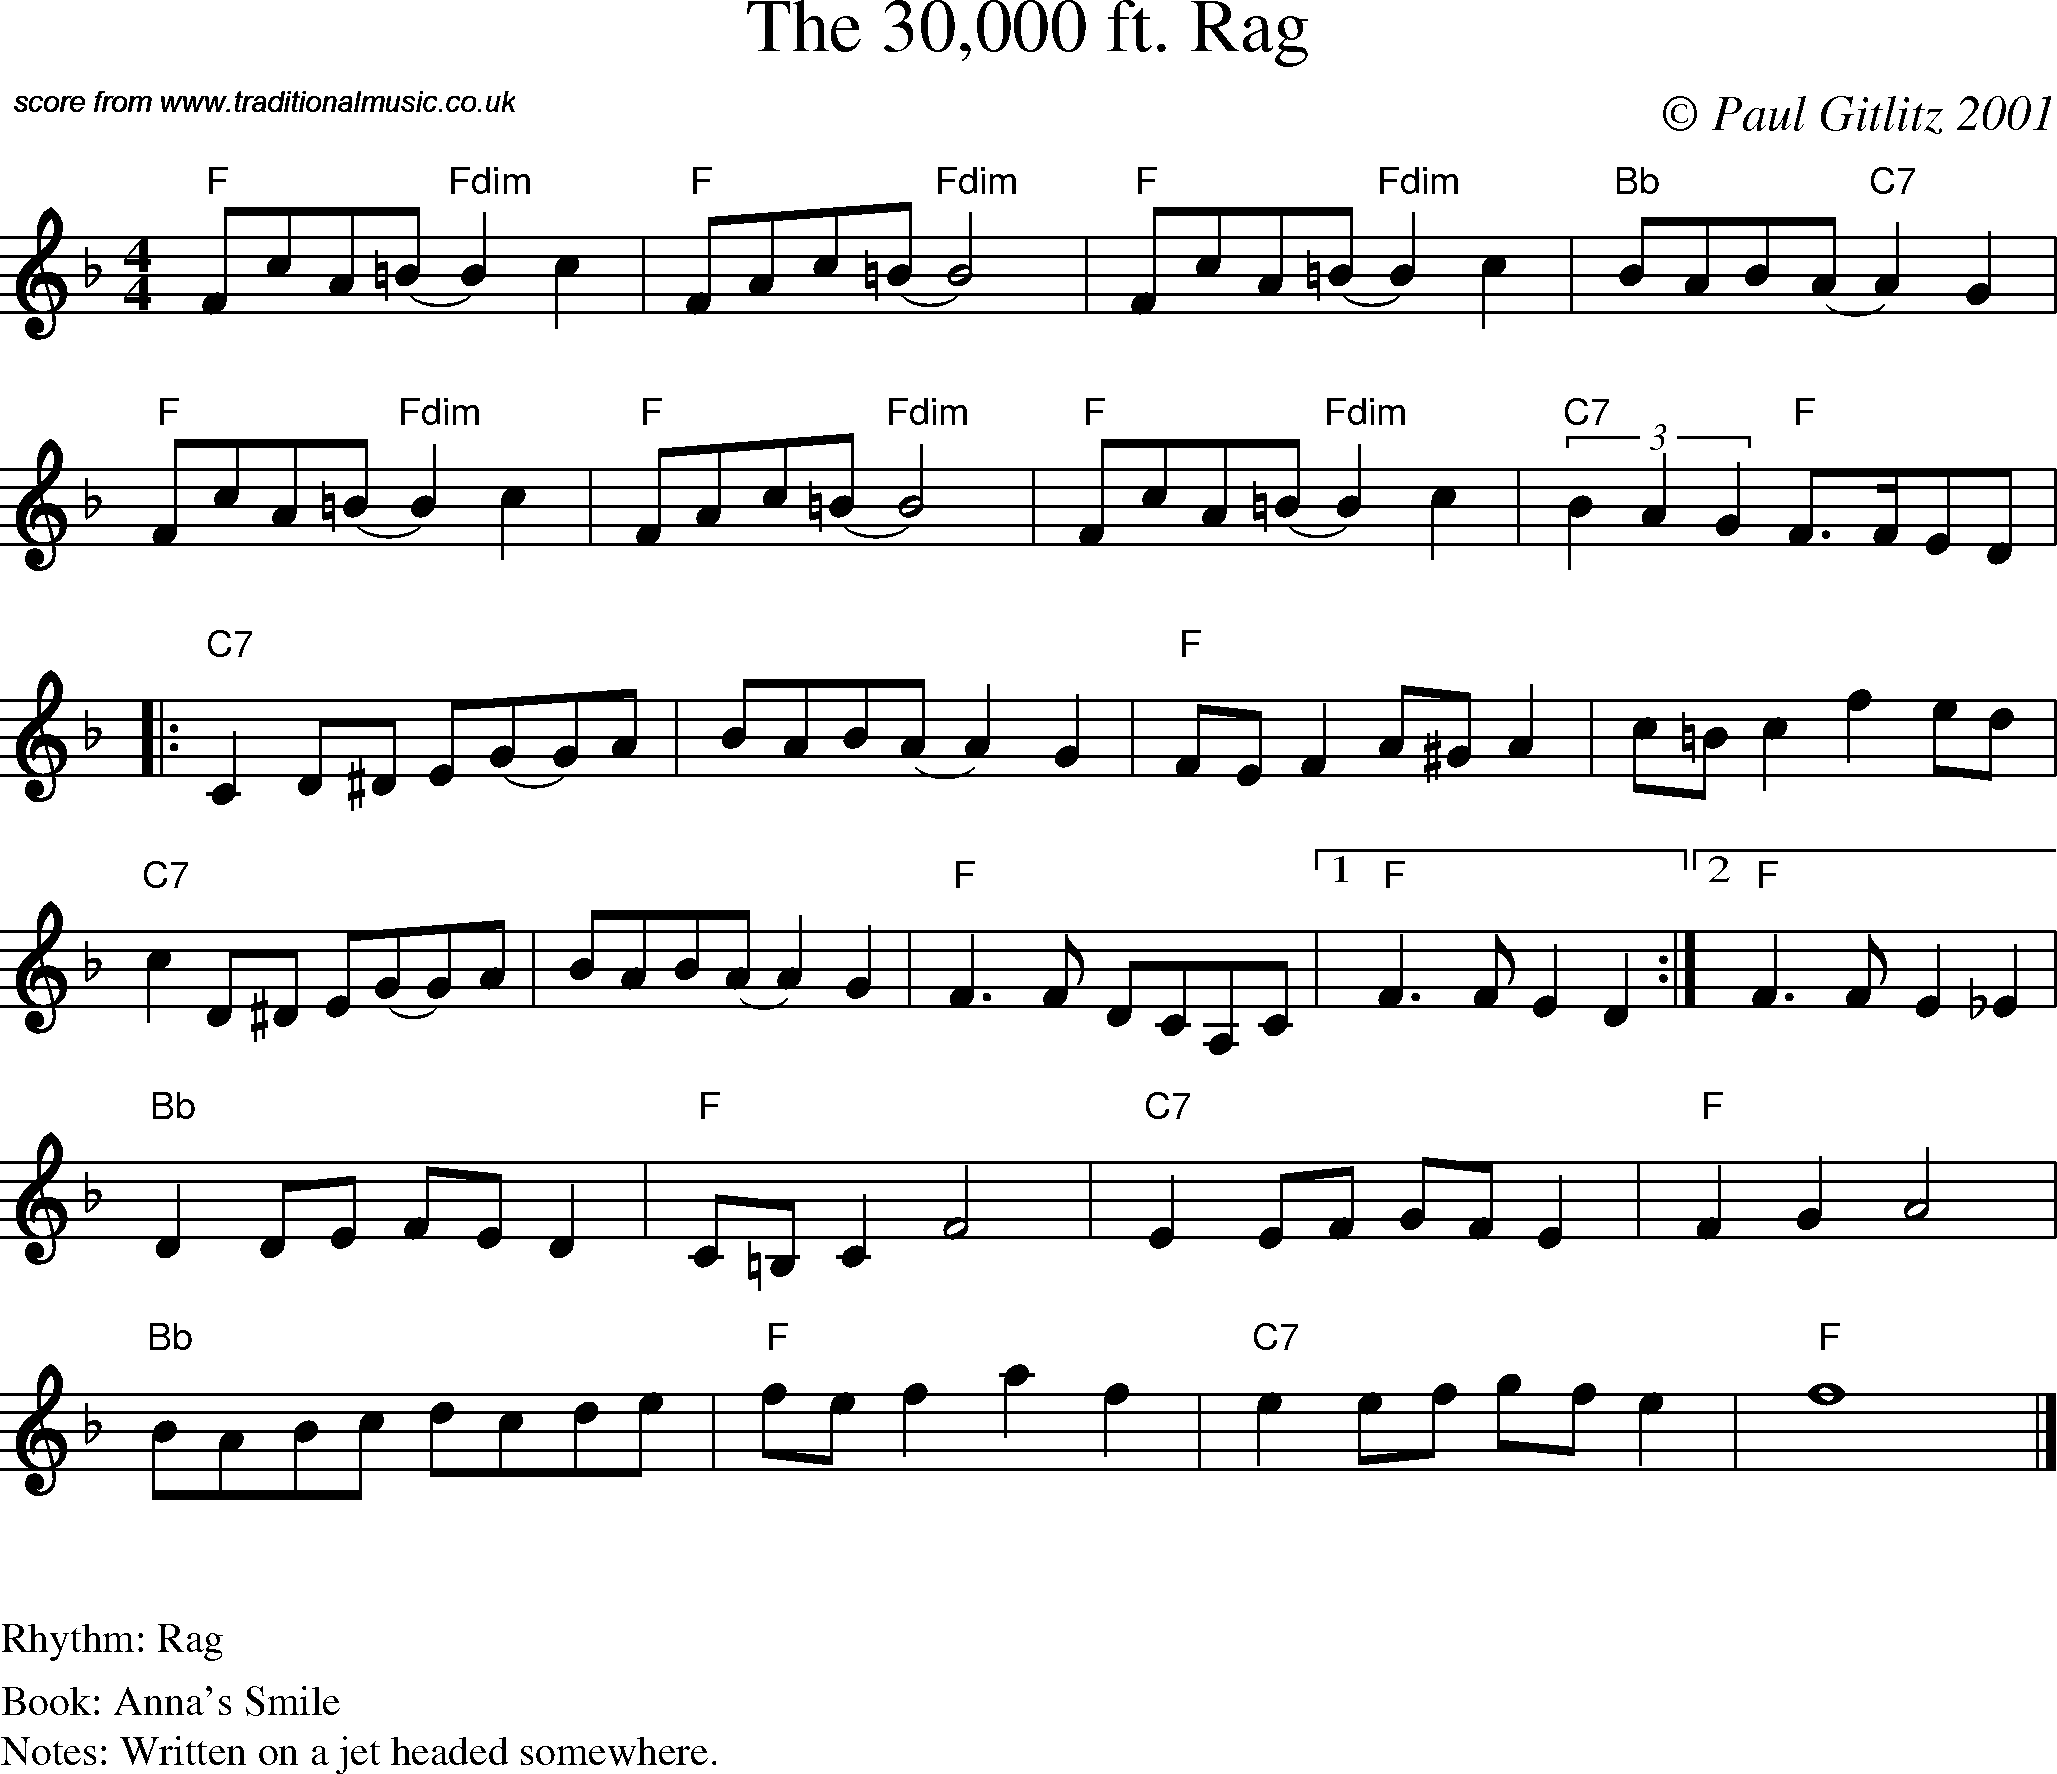 Sheet Music Score for Reel - The 30,000 ft. Rag